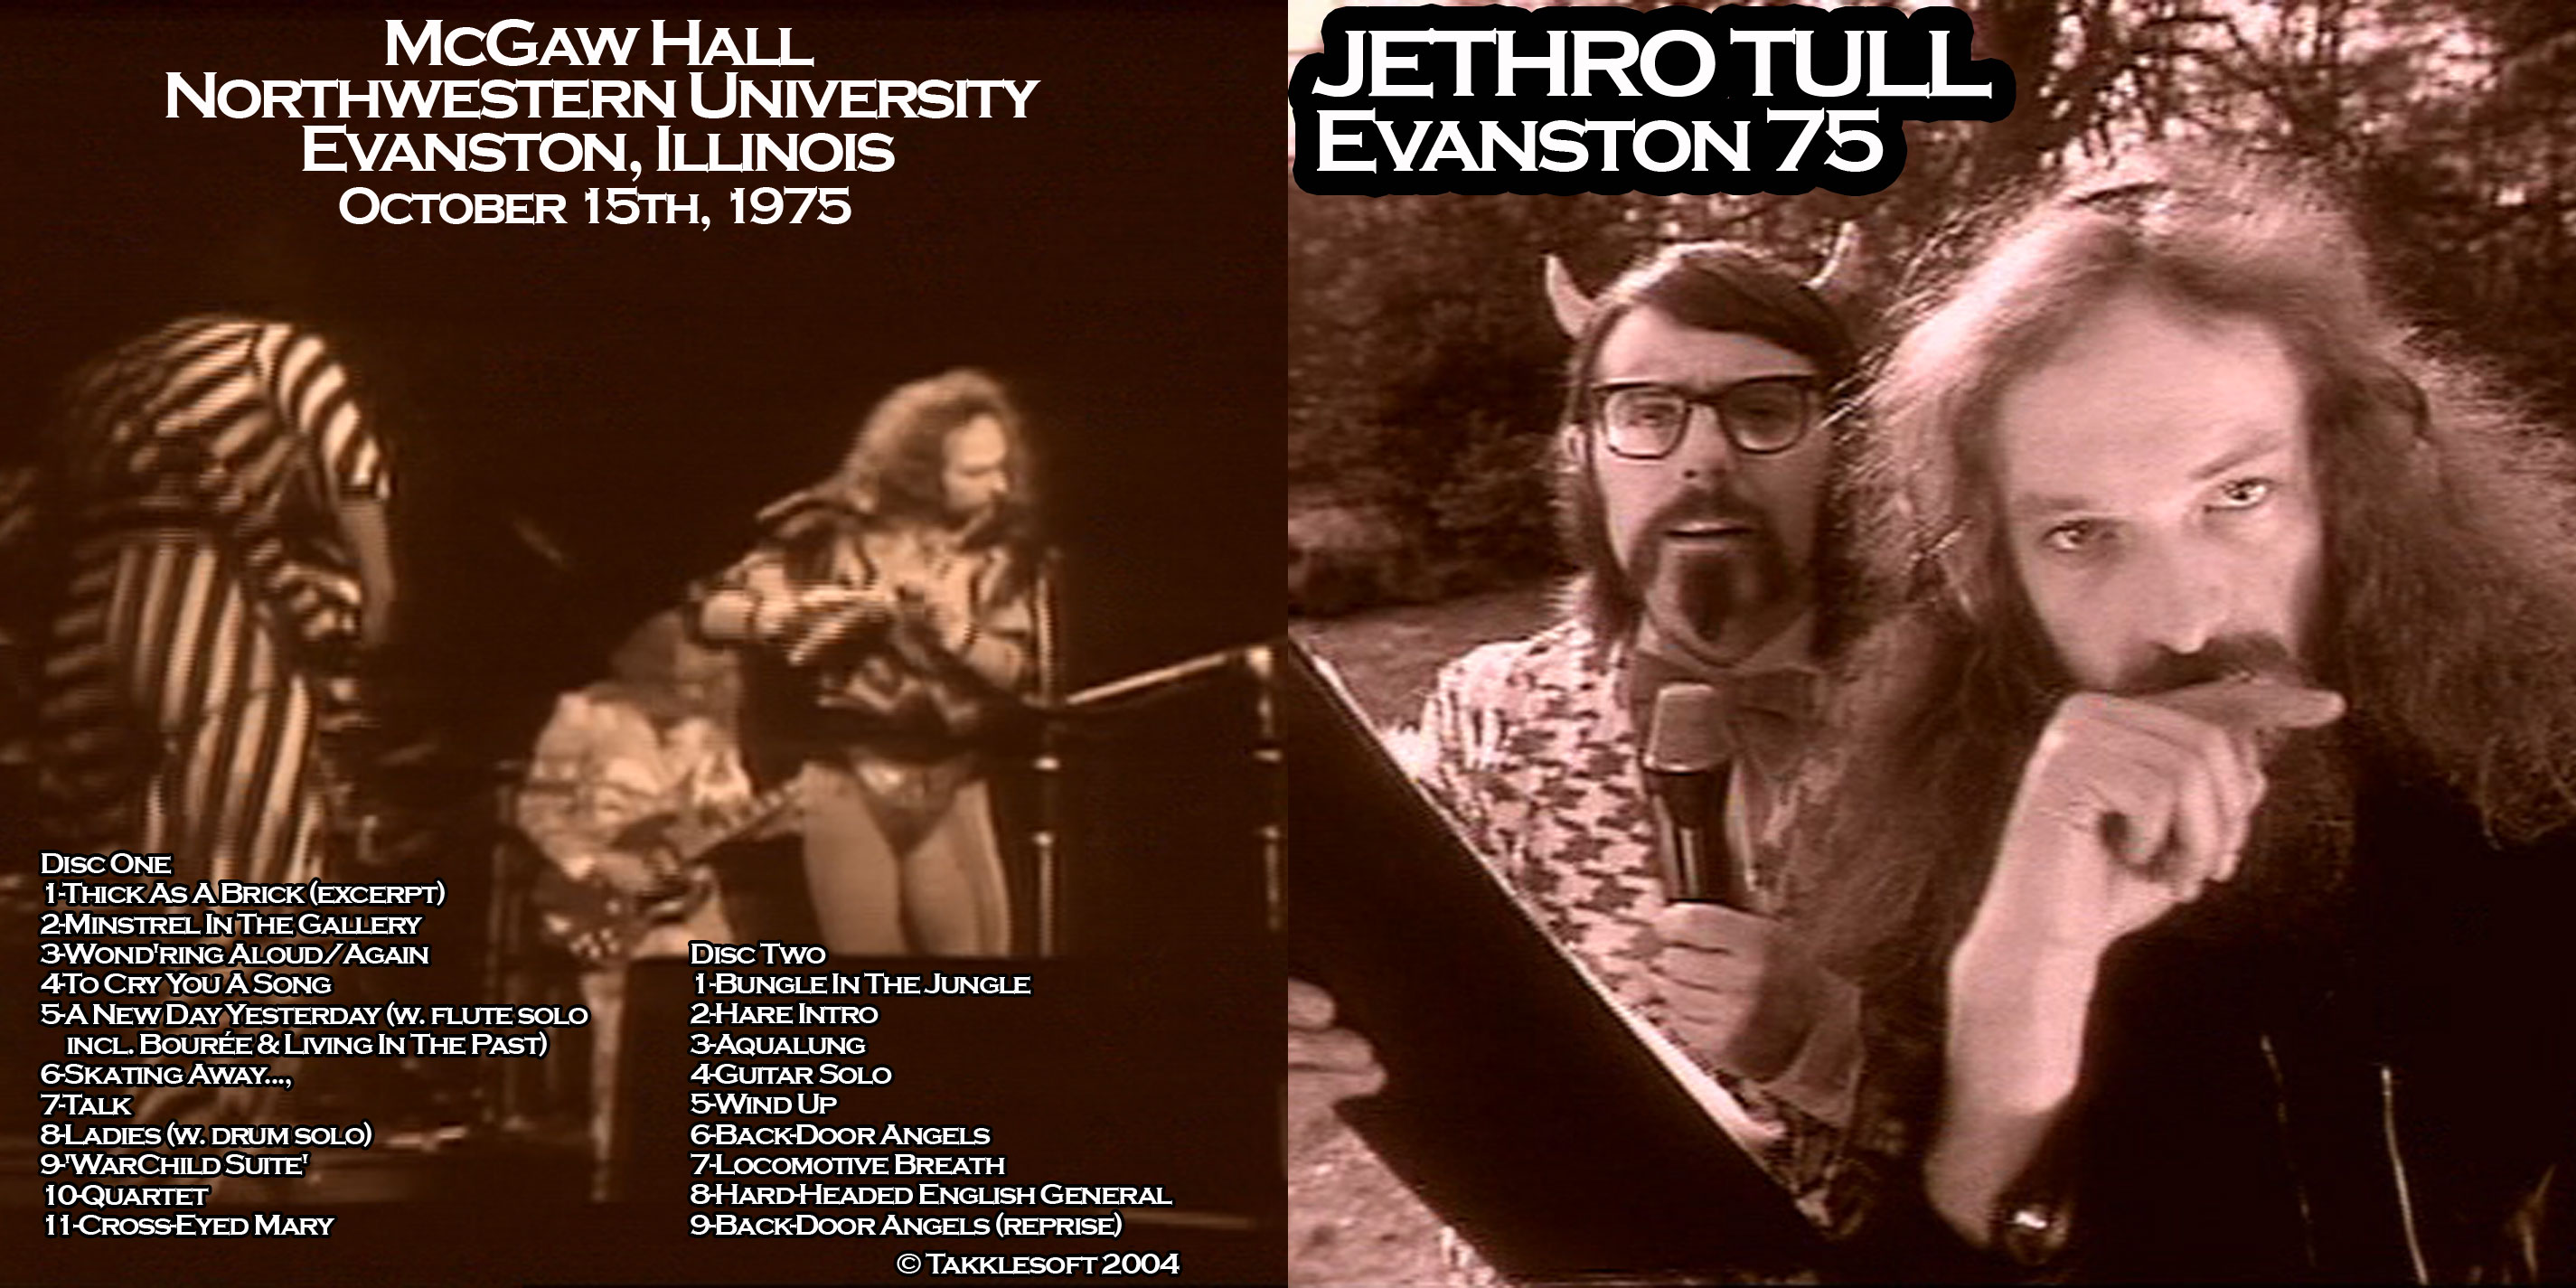 JethroTull1975-10-15NorthwesternUniversityEvanstonIL (2).jpg